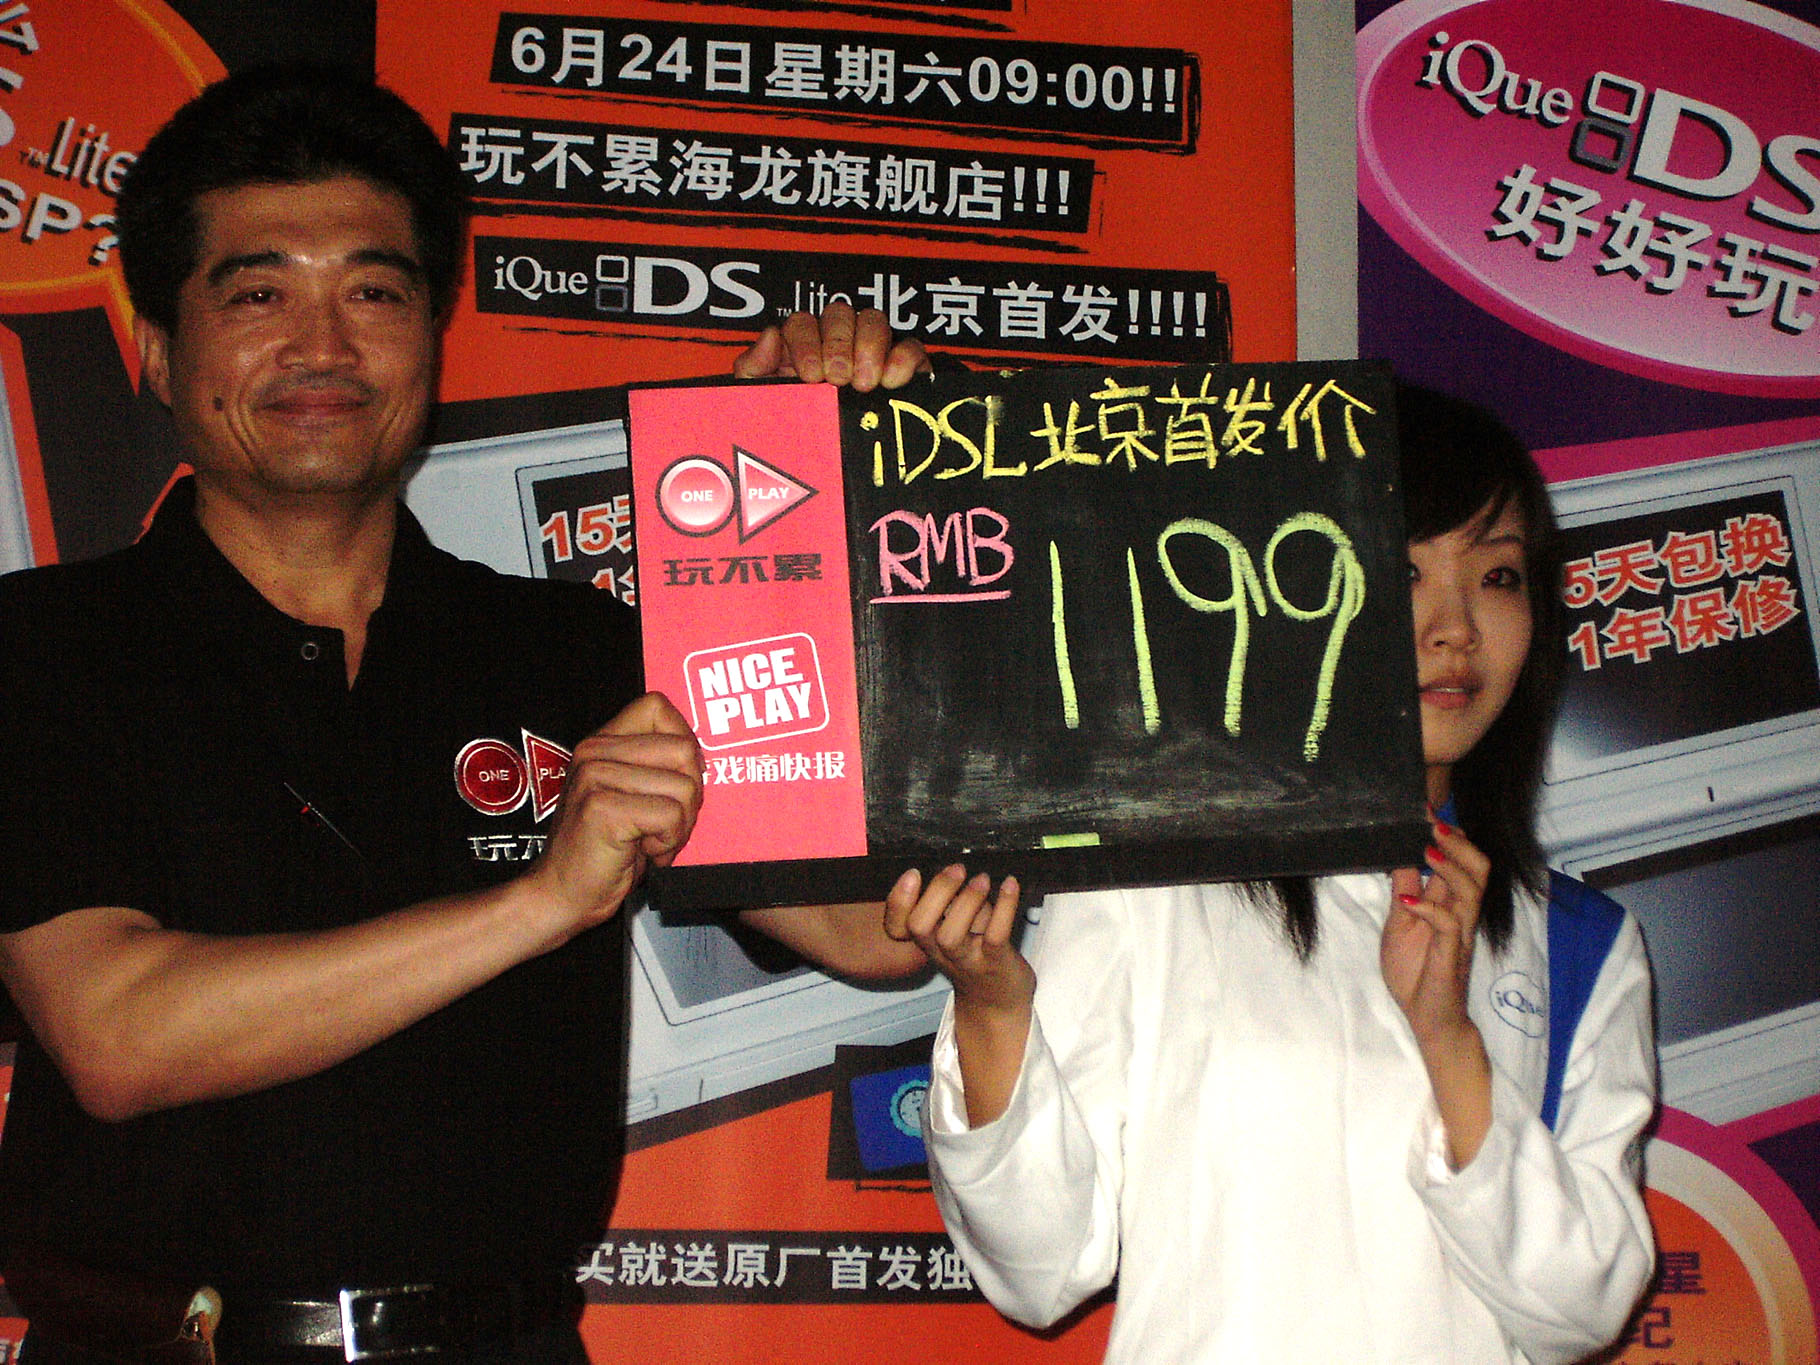 iQue DS Lite старт продаж